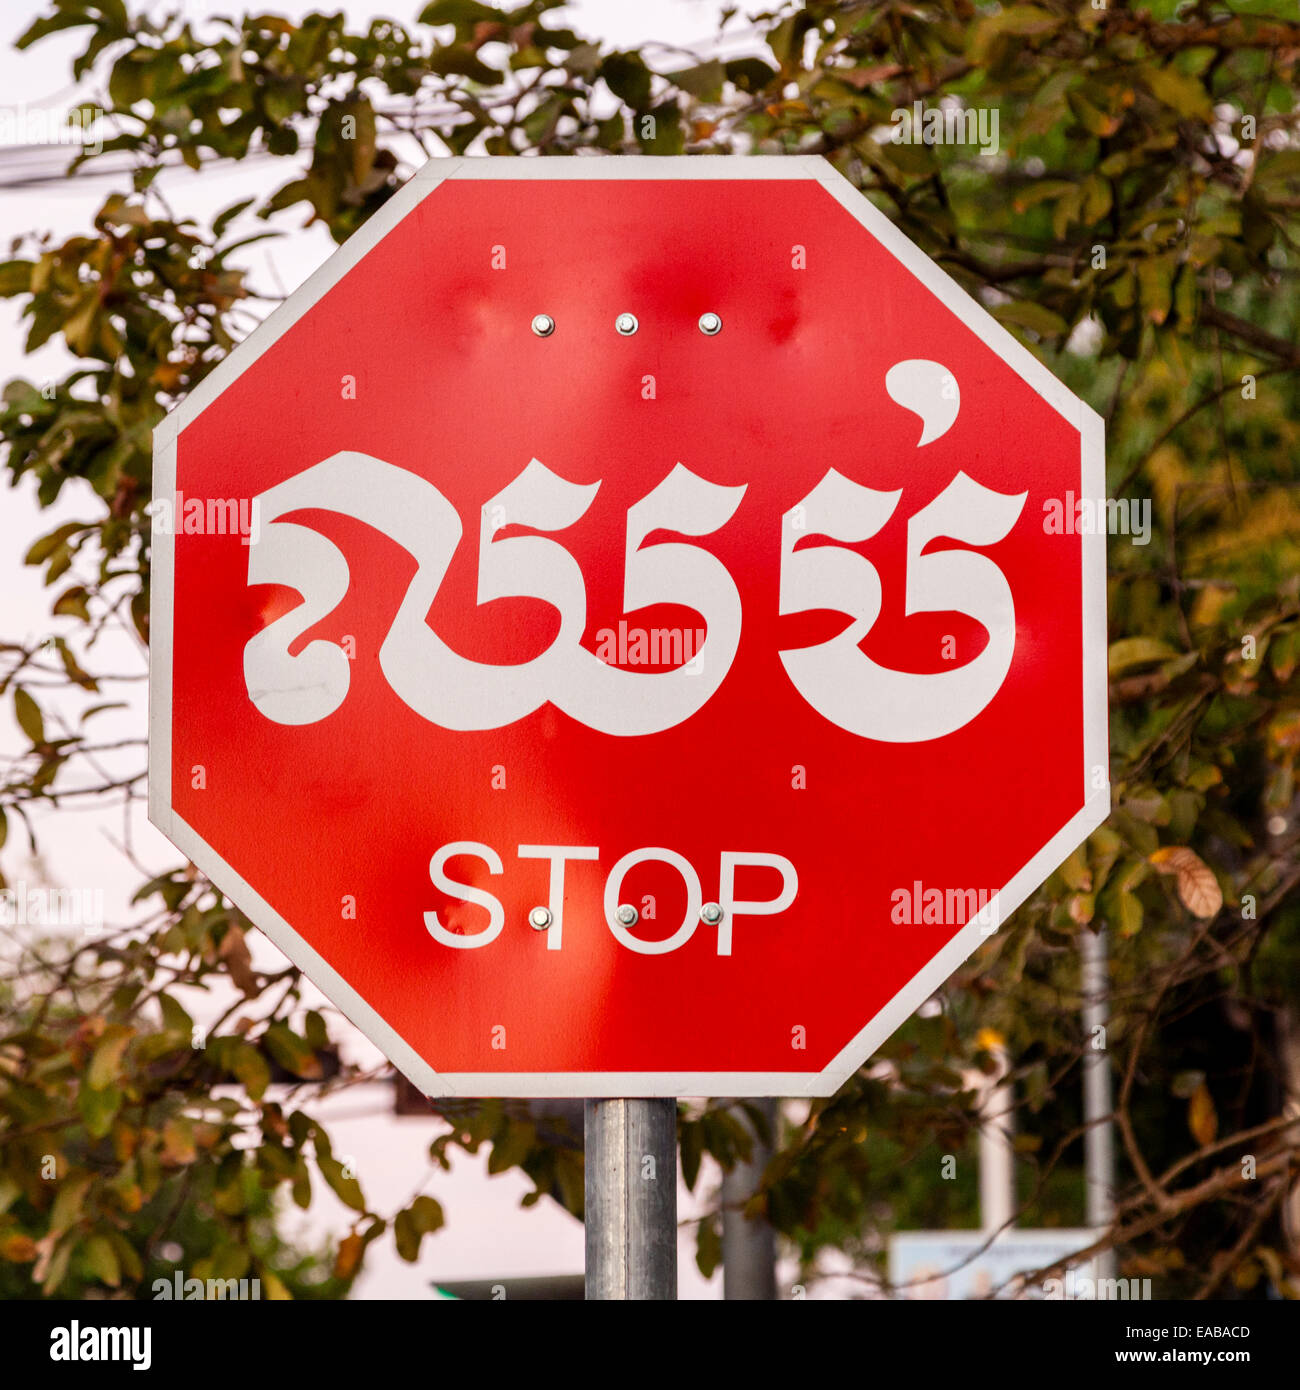 Cambodge, Siem Reap. Panneau d'arrêt, romain et Alphabets Khmers. Banque D'Images